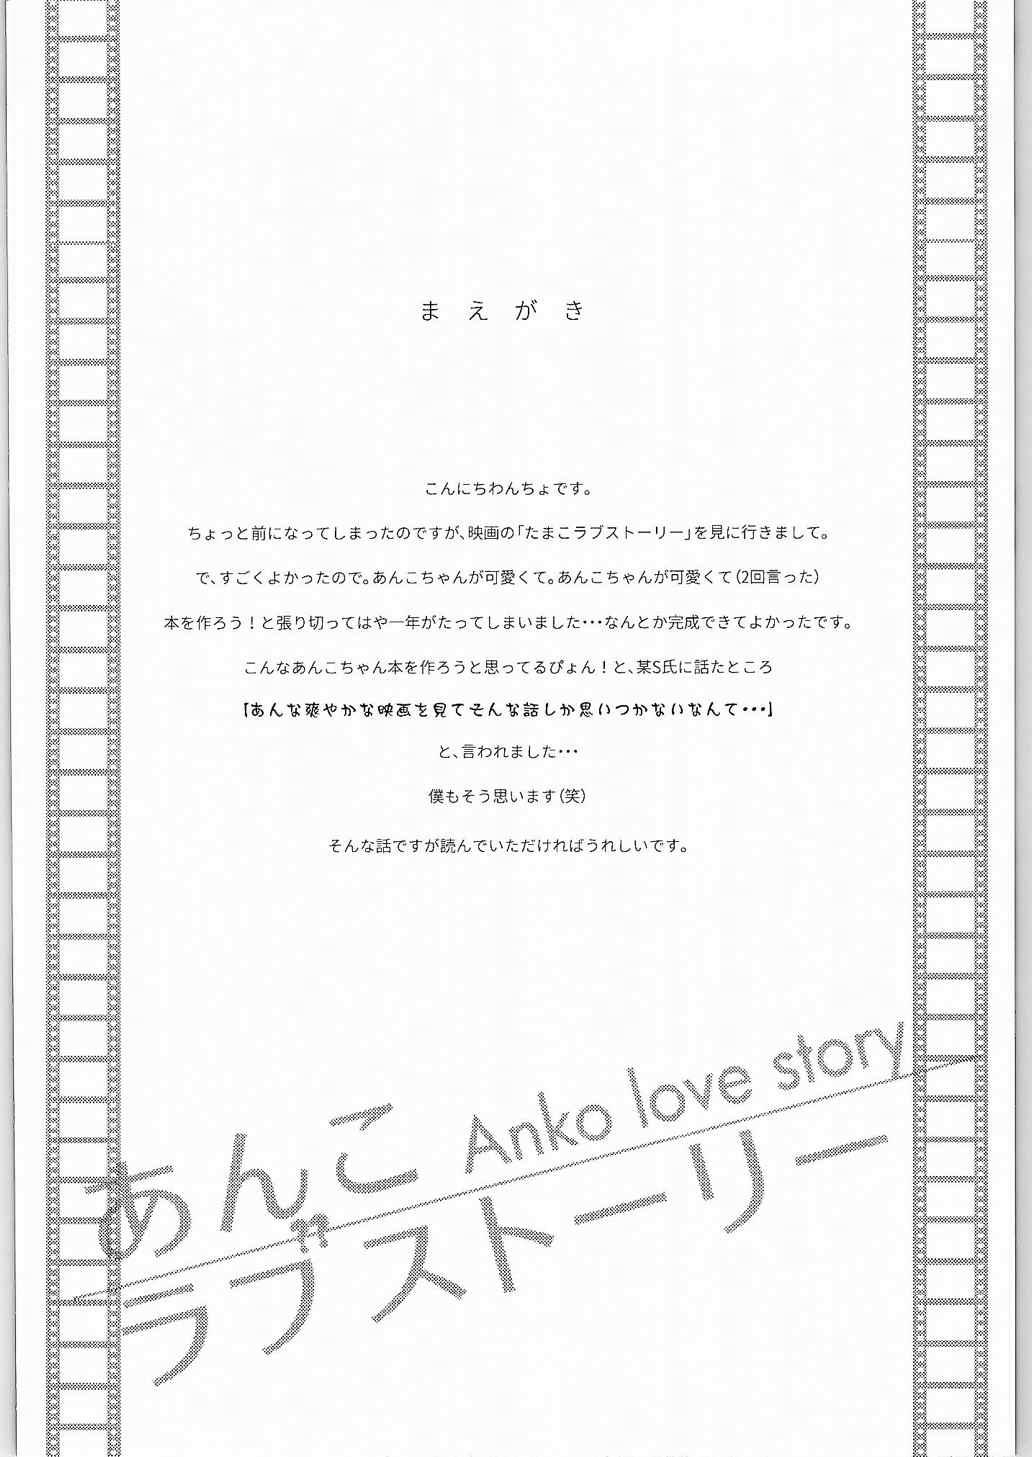 Anko Love Story 2